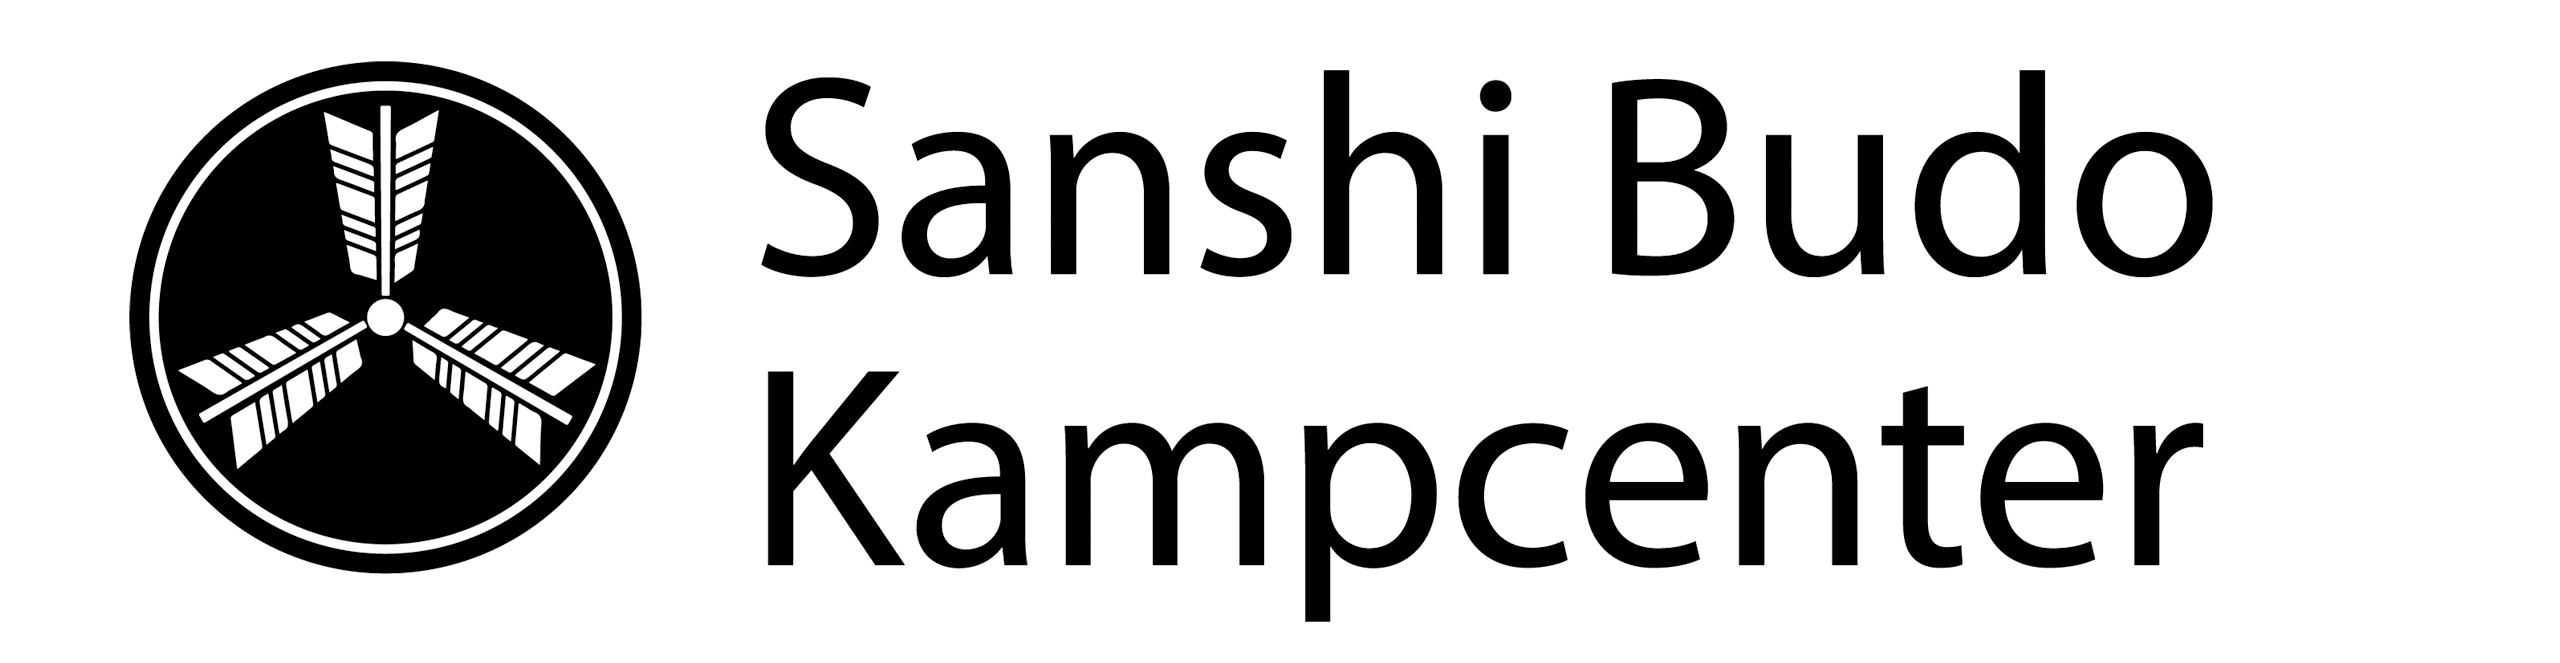 Sanshi Budo Kampcenter